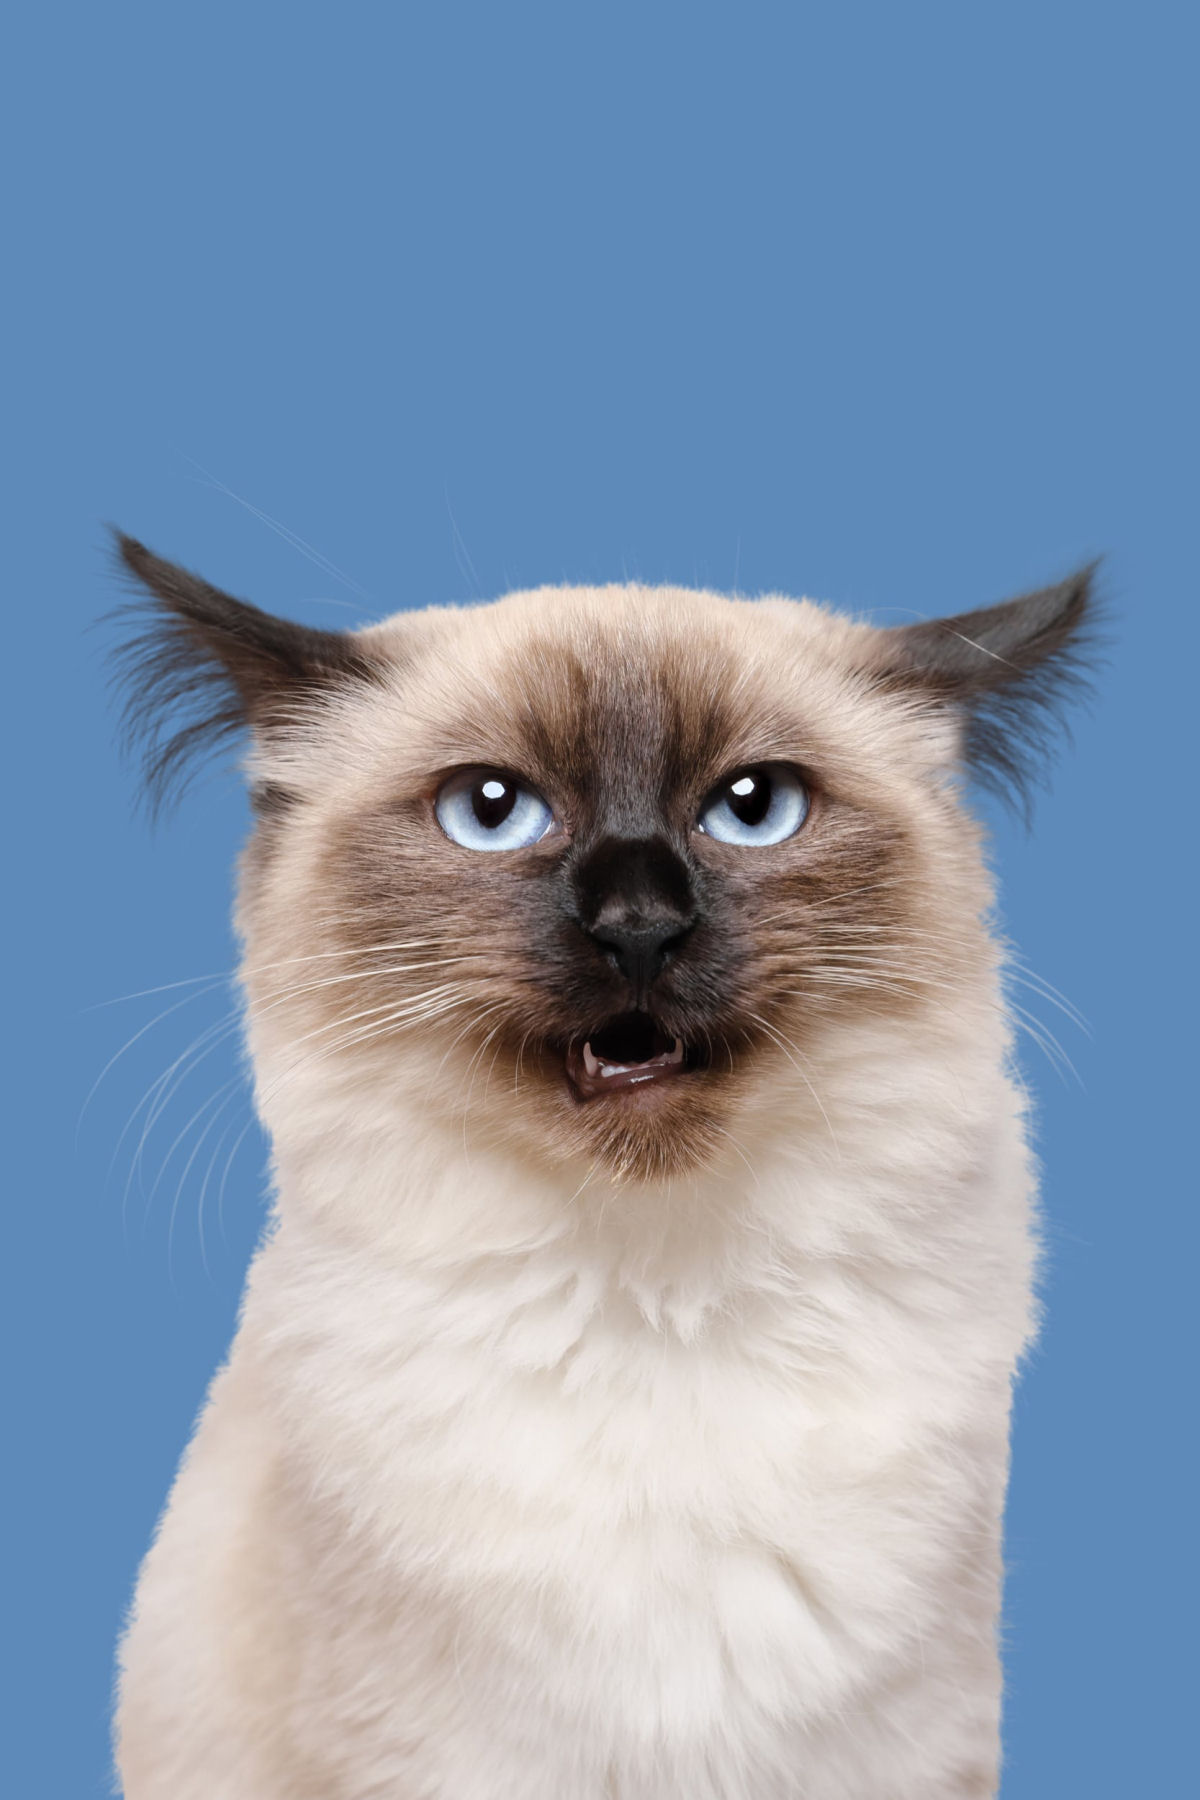 Fotos engraçadas revelam as emoções mal-humoradas e apatetadas de gatos 06